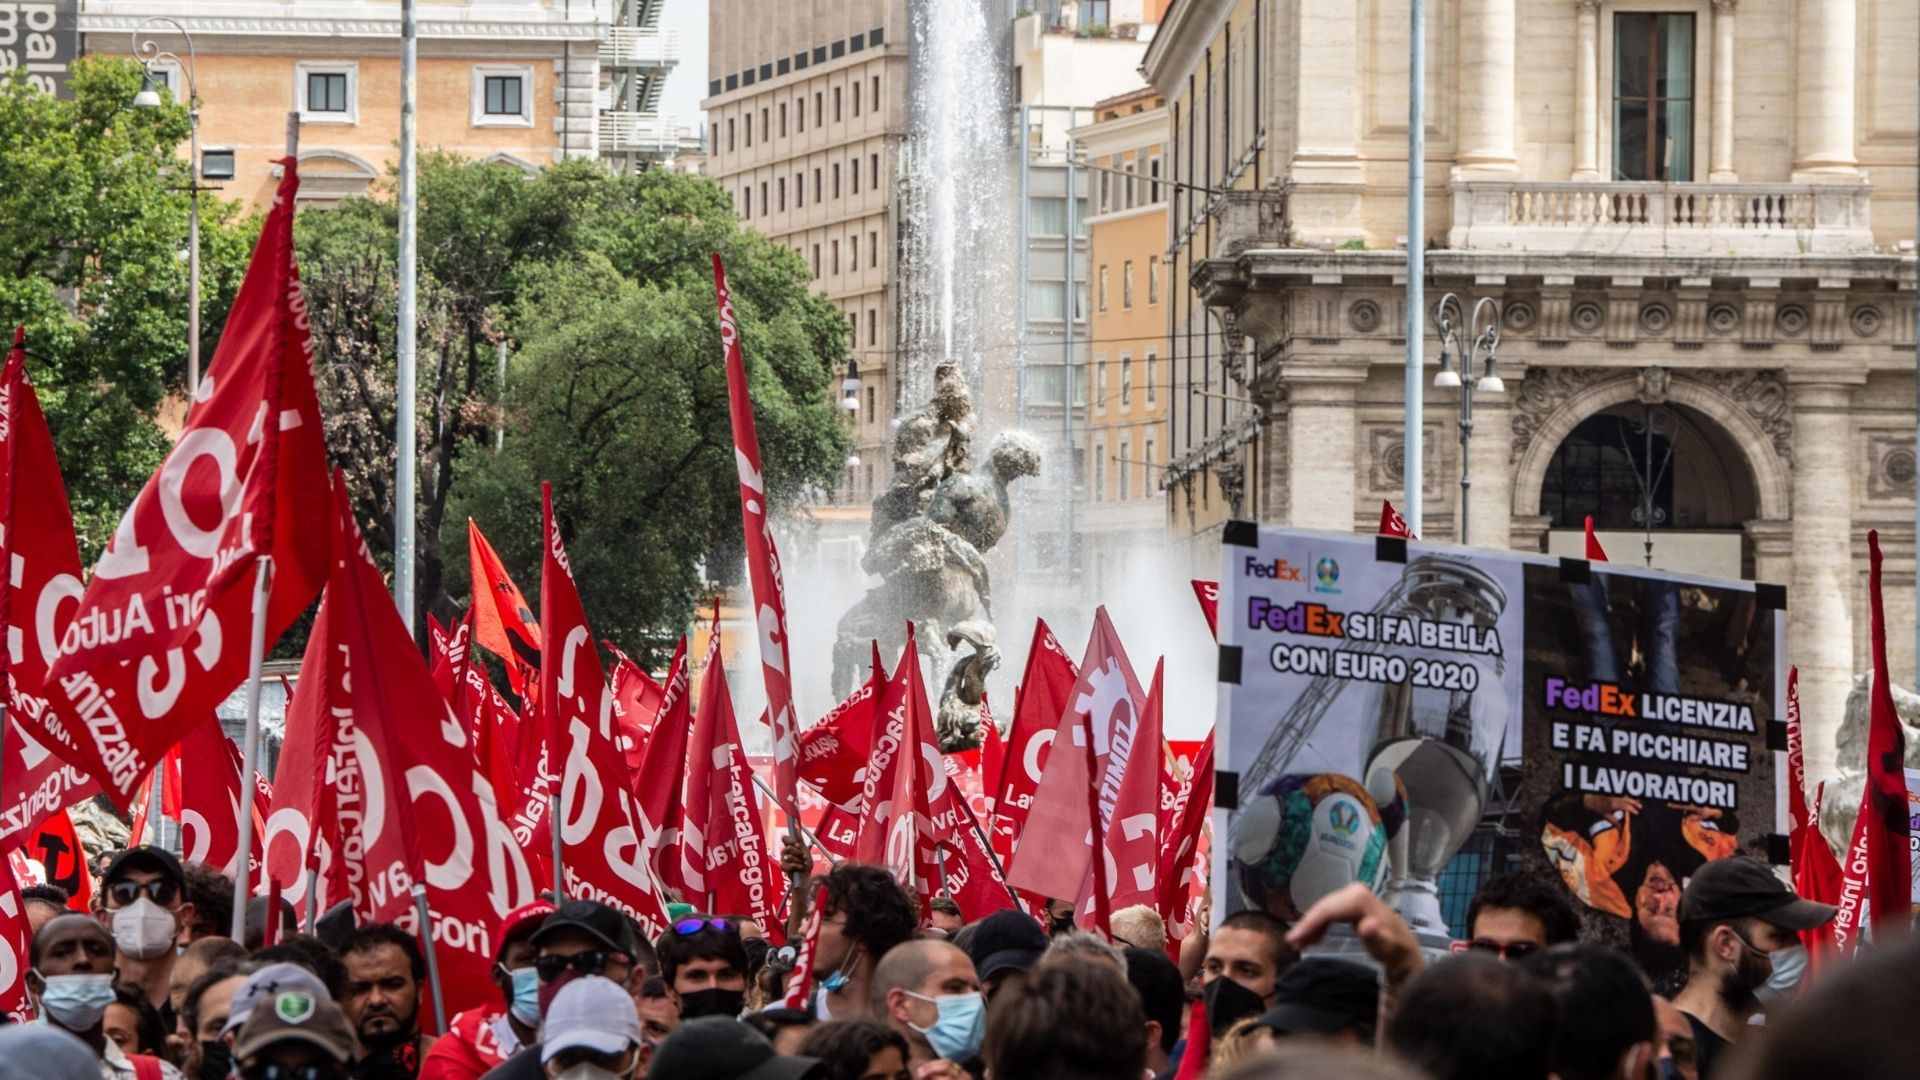 Rider in sciopero a Firenze, il caso Italpizza, quando a pagare è chi tutela e le altre notizie della giornata